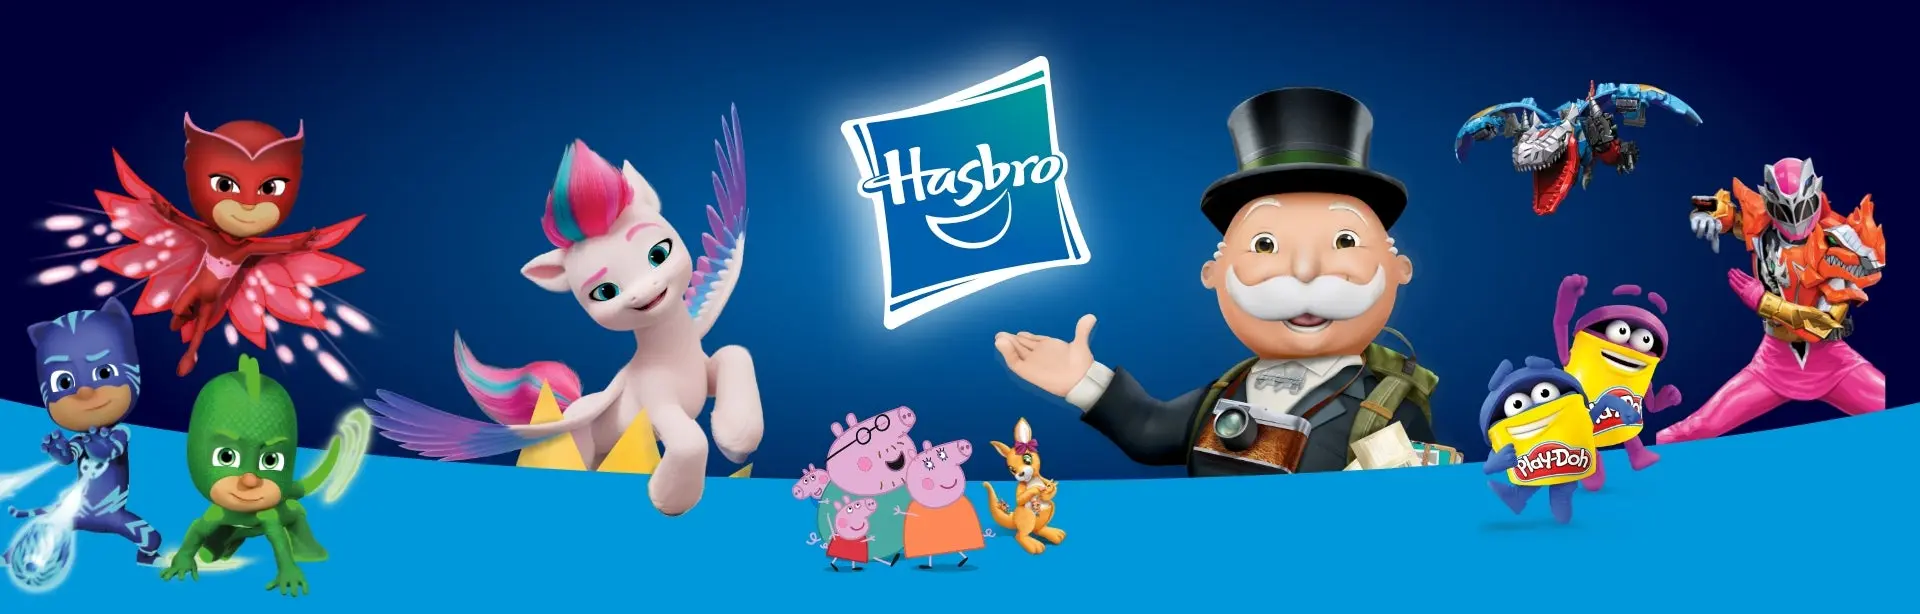 bolso Oh querido A bordo Juegos y juguetes, juguetes para niños, figuras de acción y juegos de mesa  de Hasbro